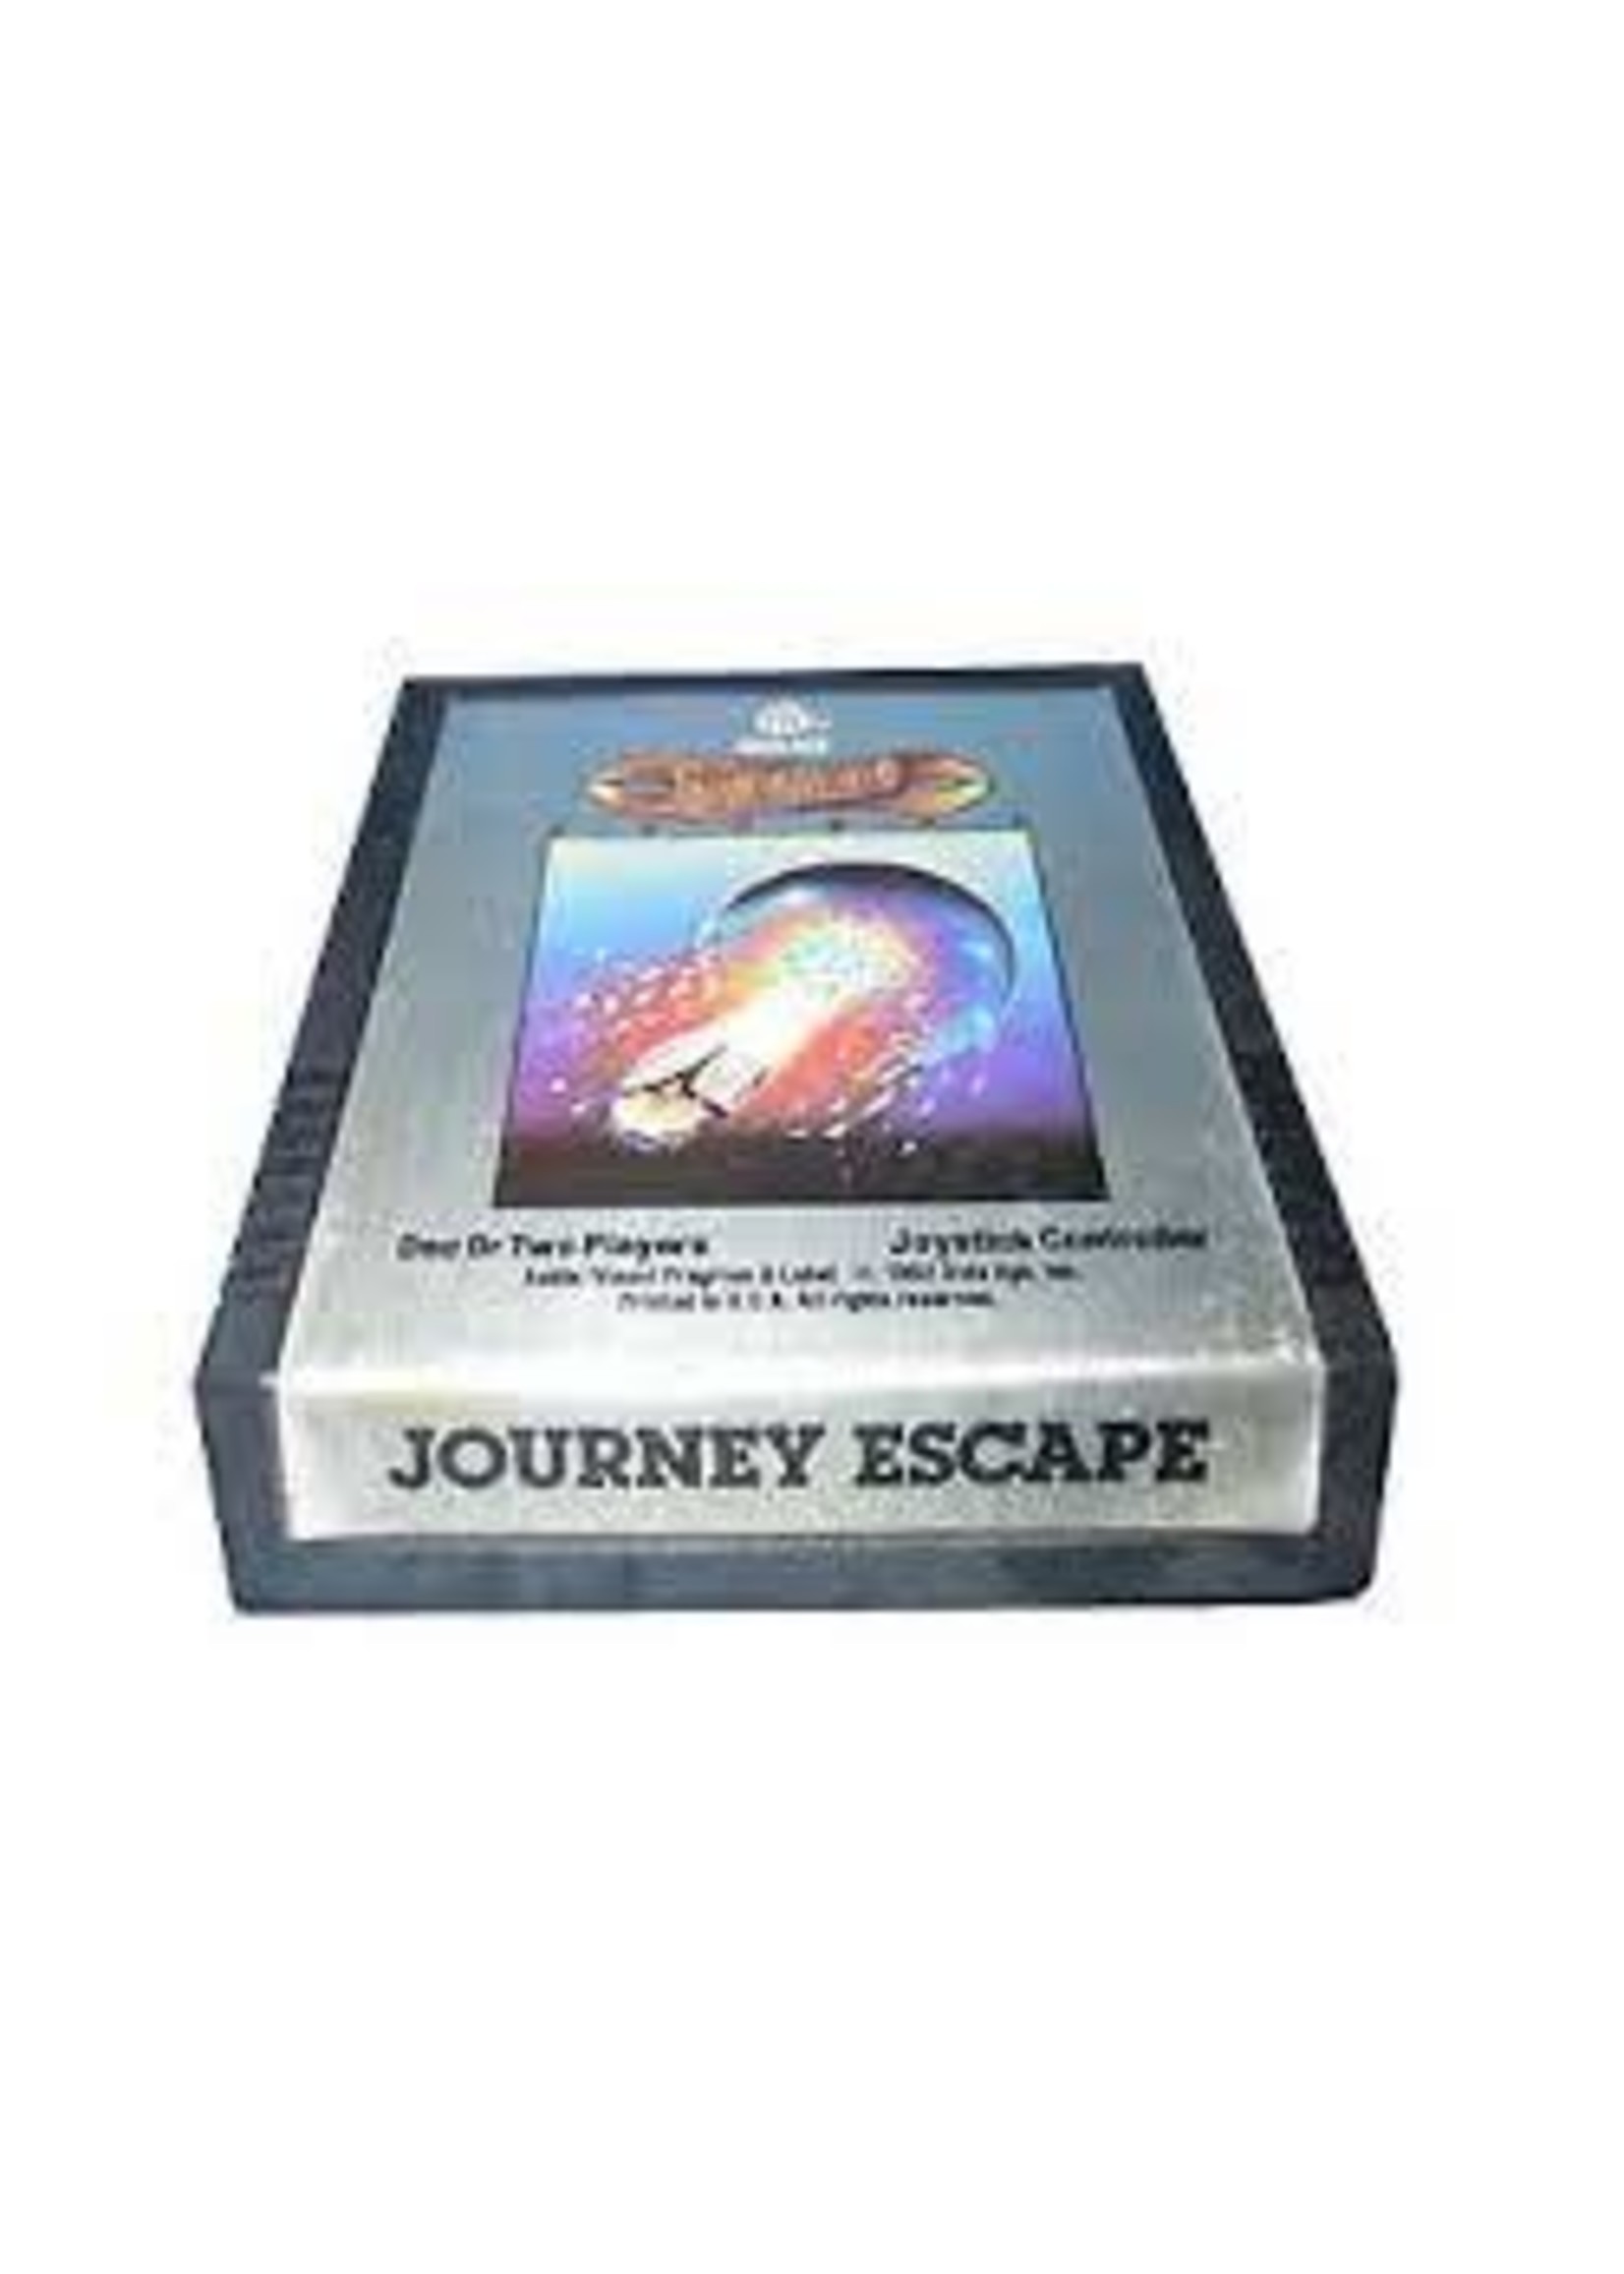 Atari 2600 Journey Escape